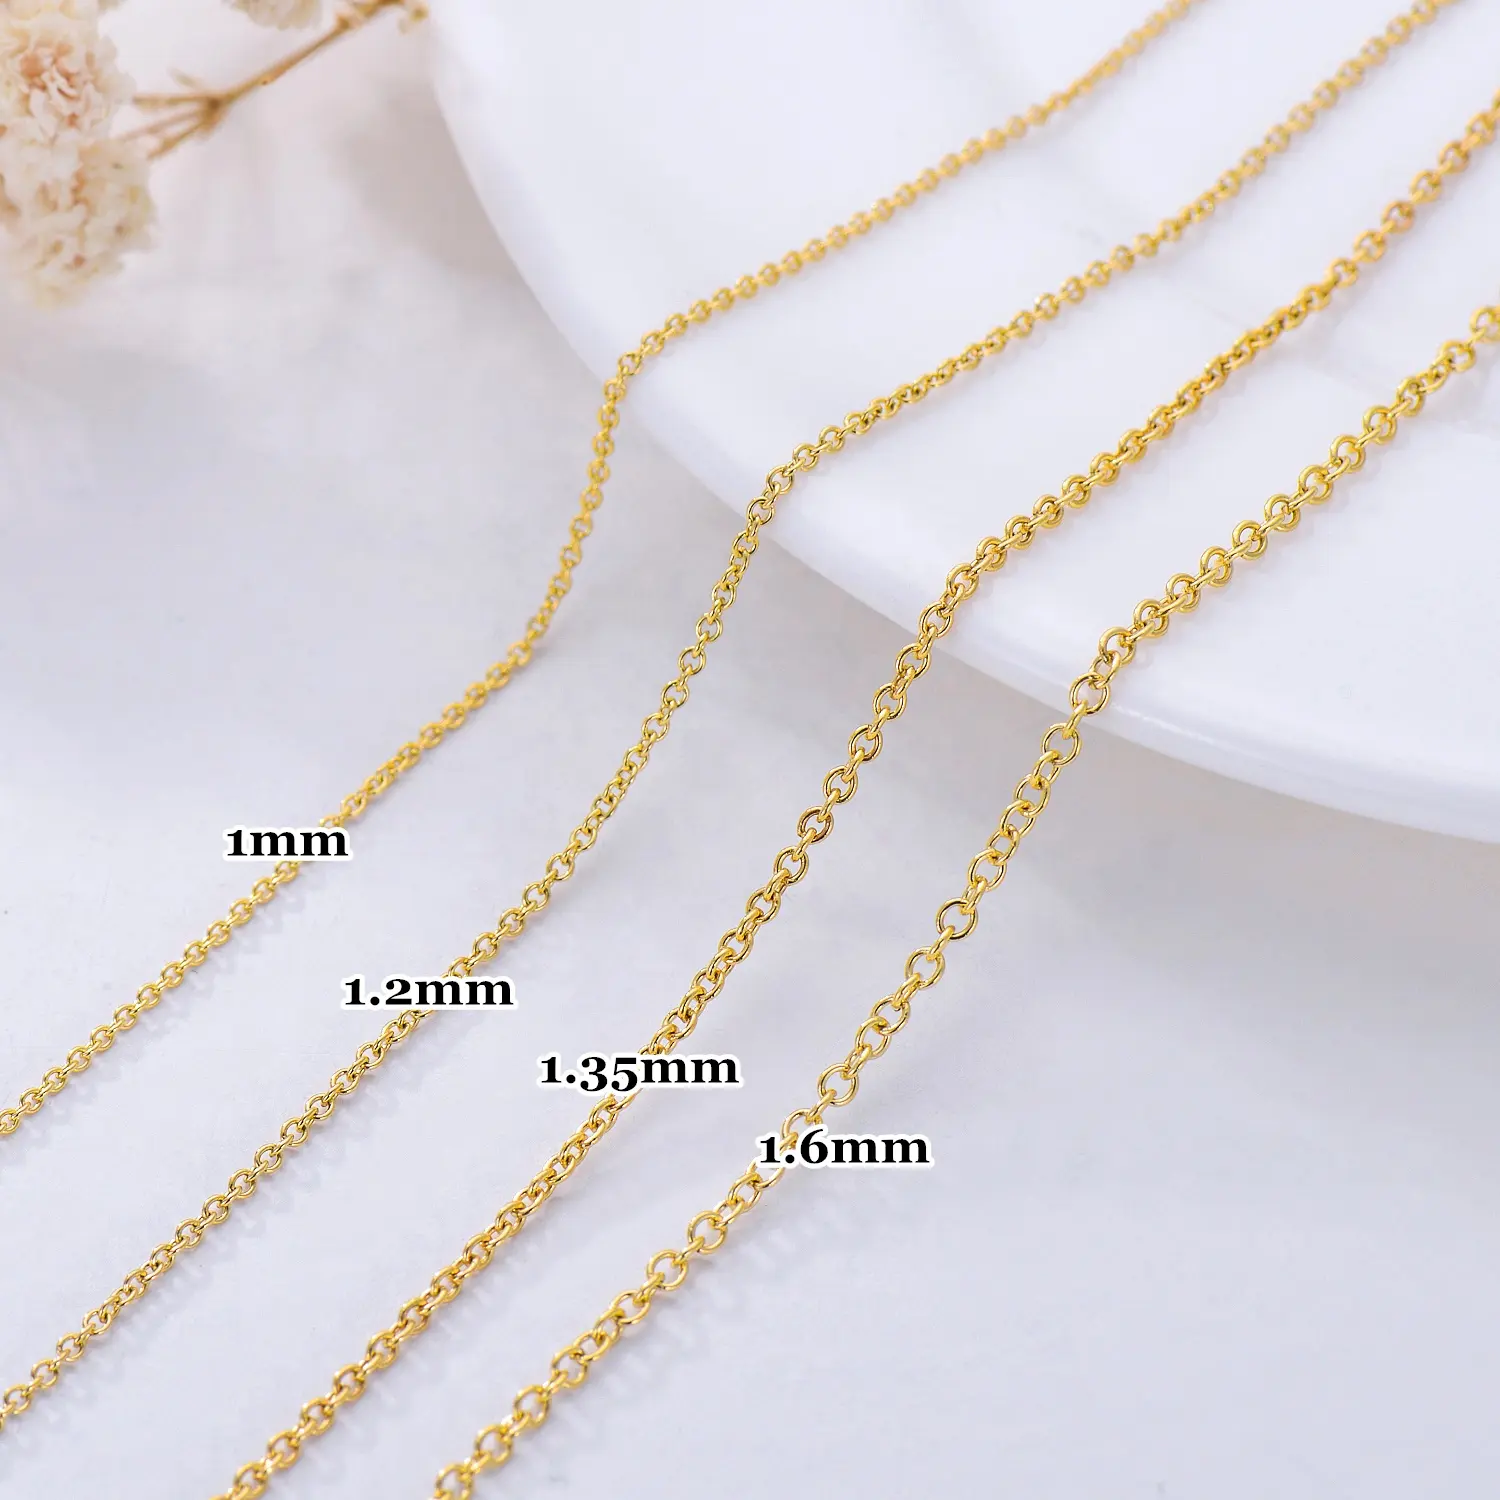 1Mm 1.2Mm 1.35Mm 1.6Mm Tahan Lama Kuat Padat 14K Emas Rantai Kalung dengan Musim Semi Gesper Membuat Perhiasan Kalung